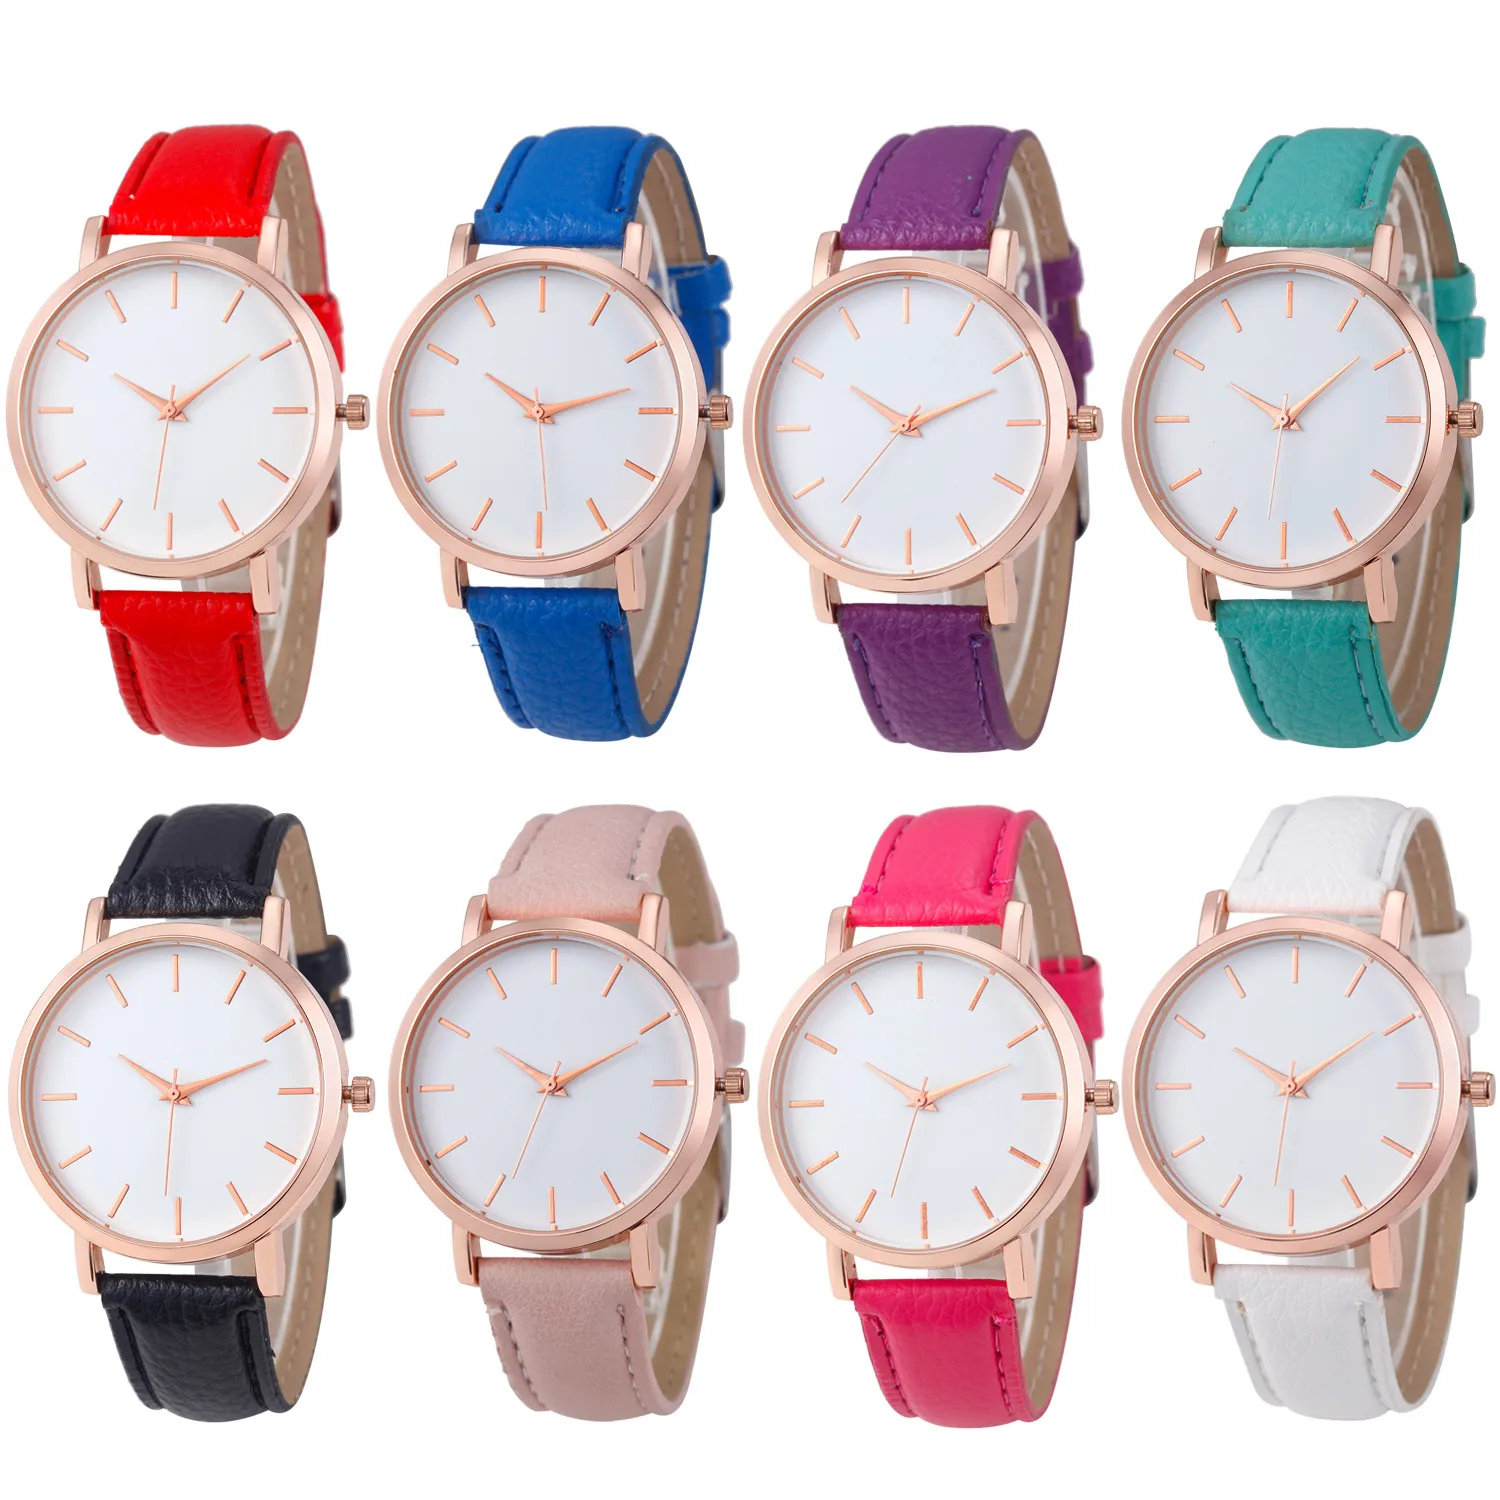 JAYCOSIN Горячие красные часы для мужчин и женщин кожаный Модный повседневный браслет наручные часы подарок люксовый бренд SE0805